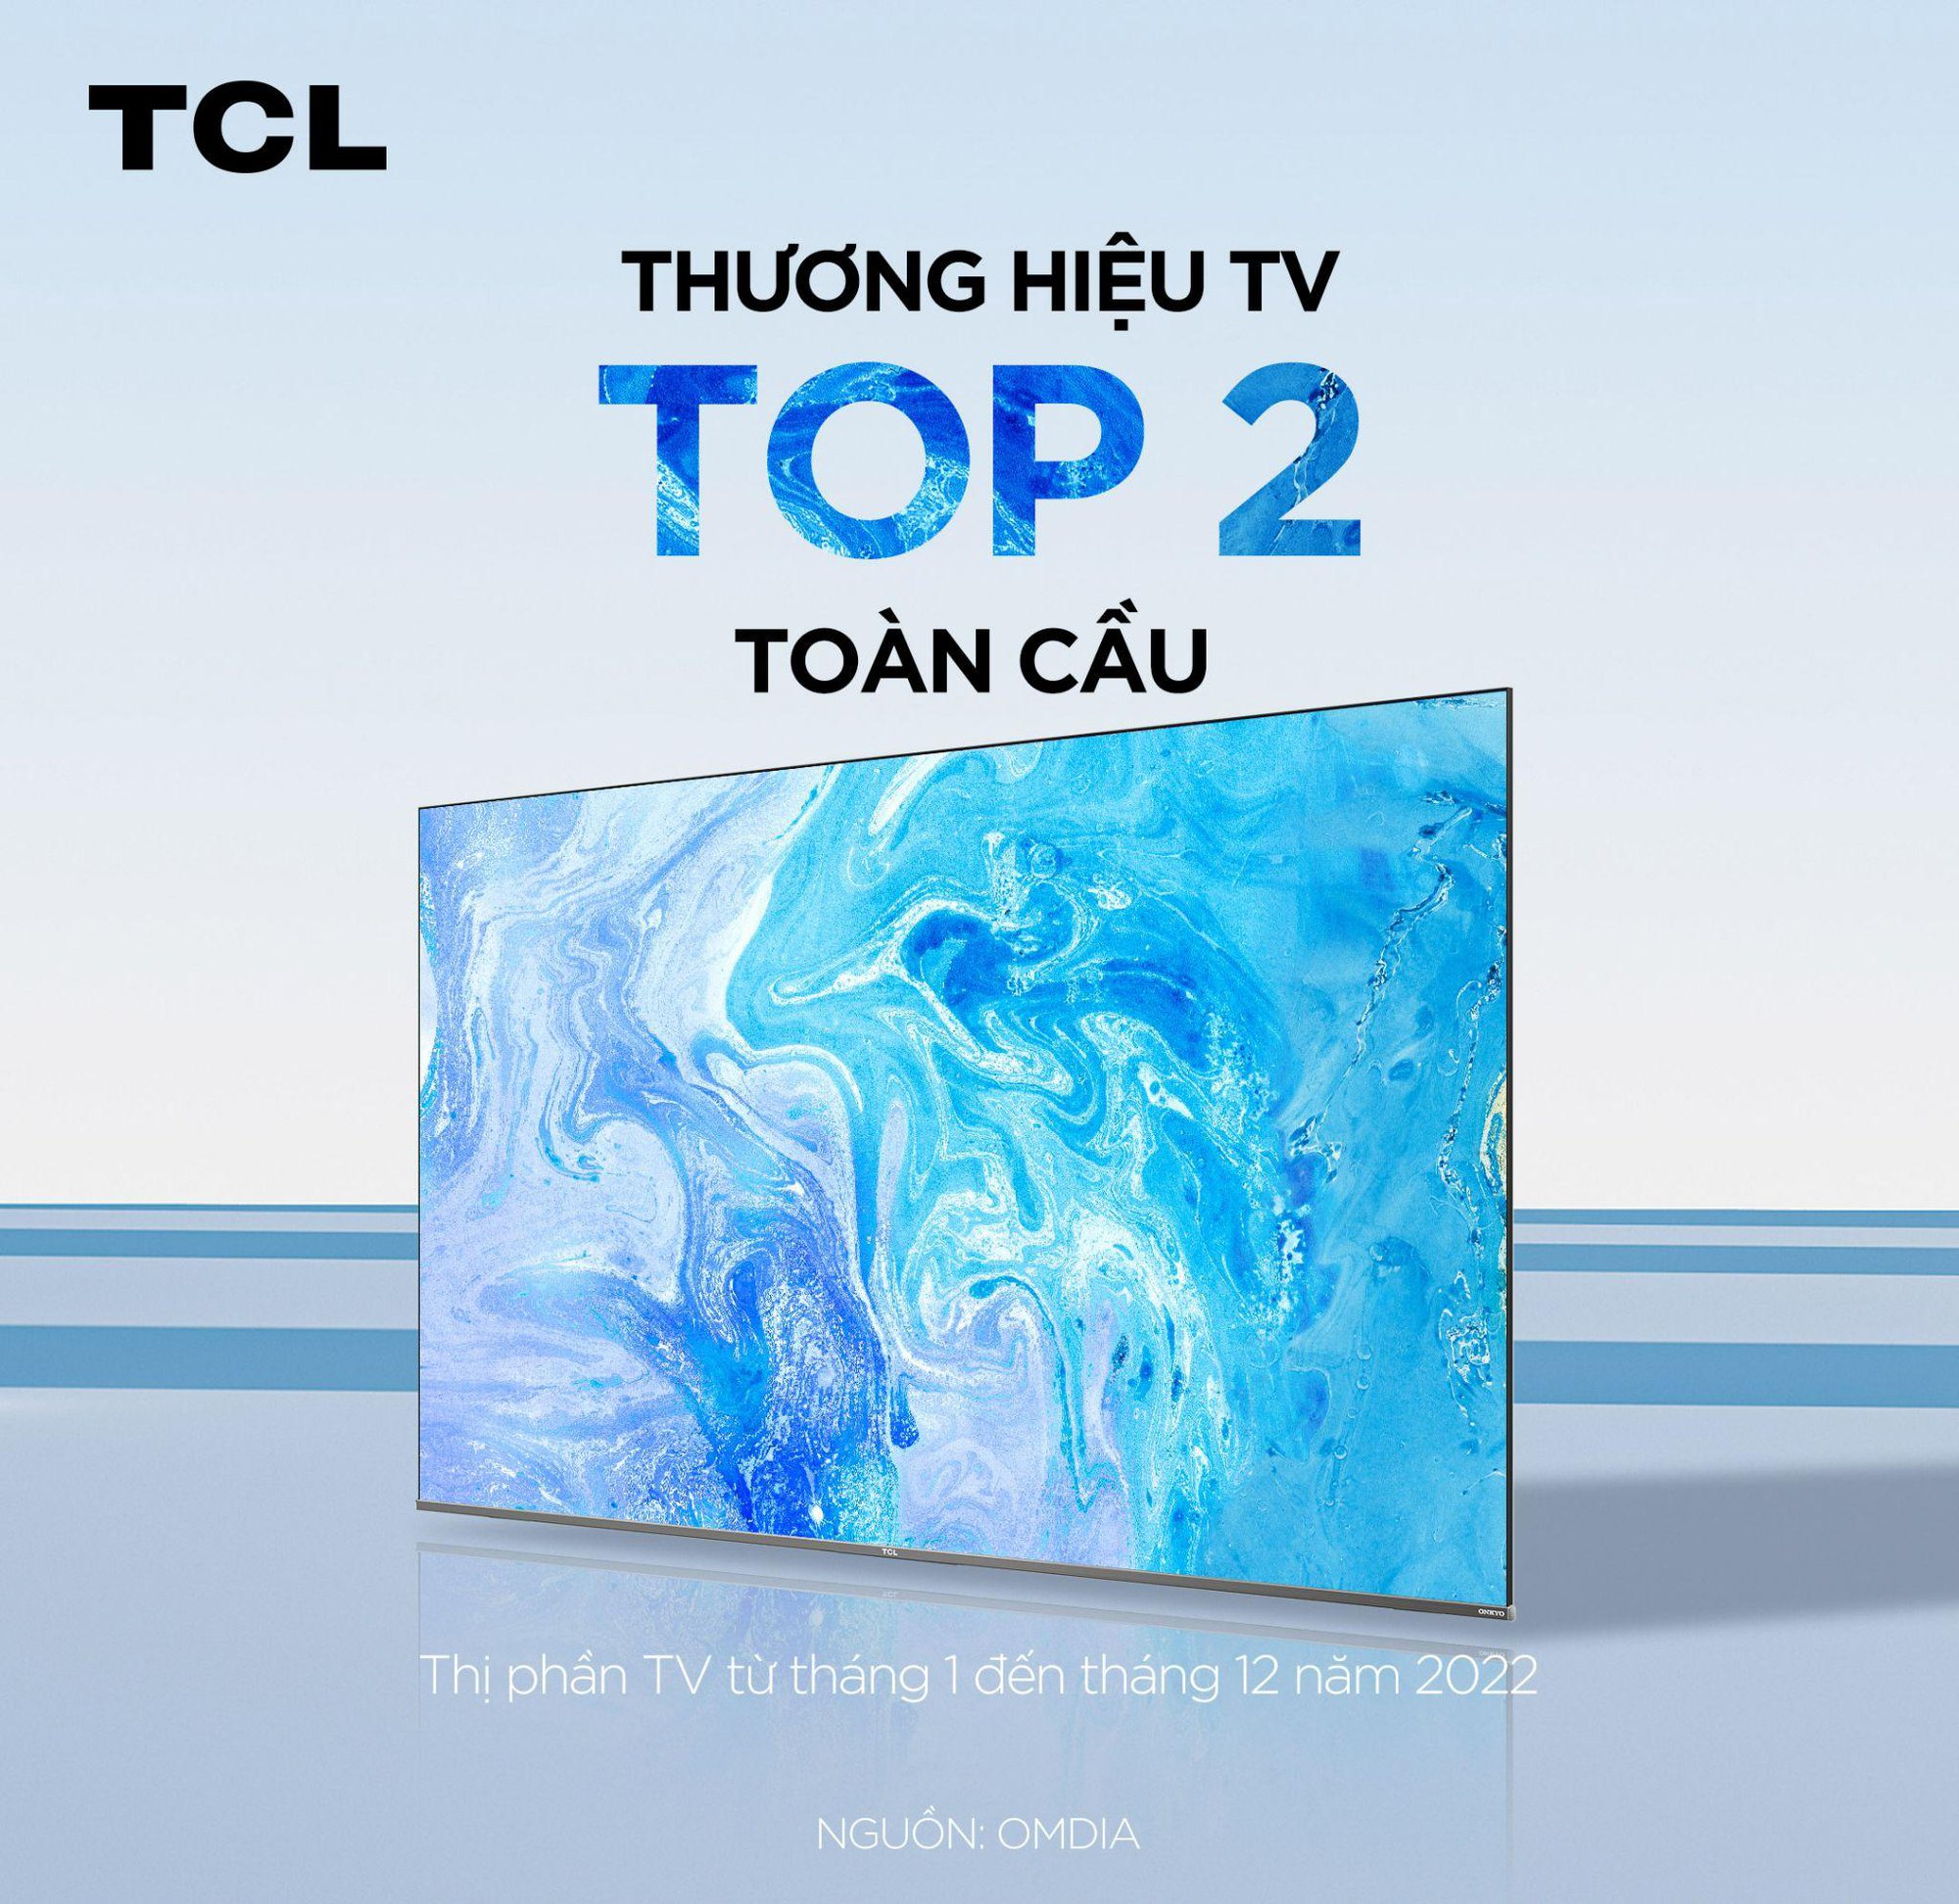 TCL xếp hạng Top 2 thương hiệu TV toàn cầu và đứng đầu thị phần TV 98 inch theo OMDIA - Ảnh 1.